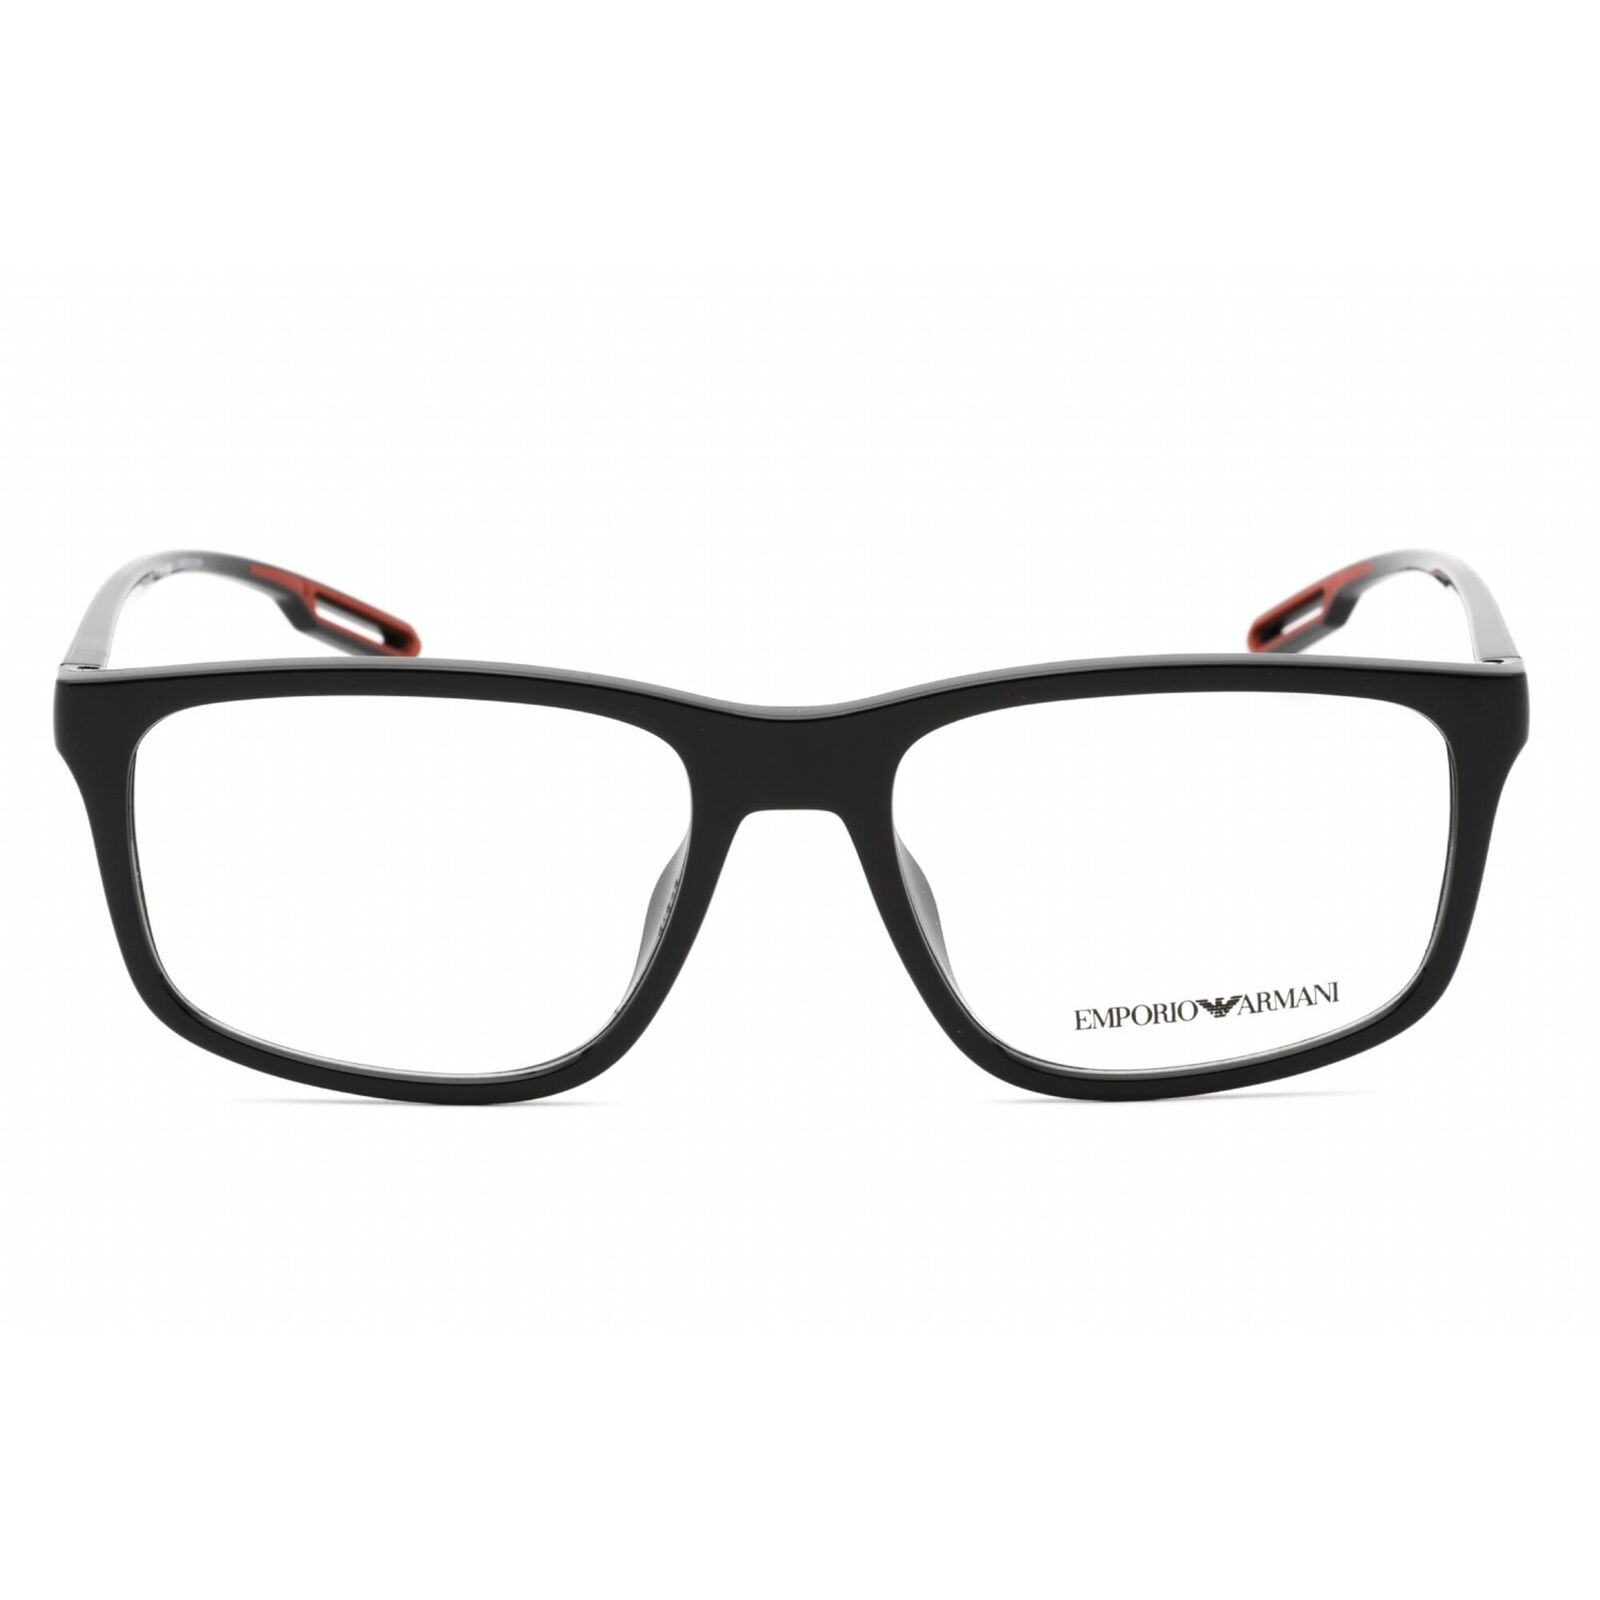 Emporio Armani Men's Eyeglasses Shiny Black Plastic Full Rim Frame 0EA3209U 5017 Emporio Armani 0EA3209U 5017 - фотография #2